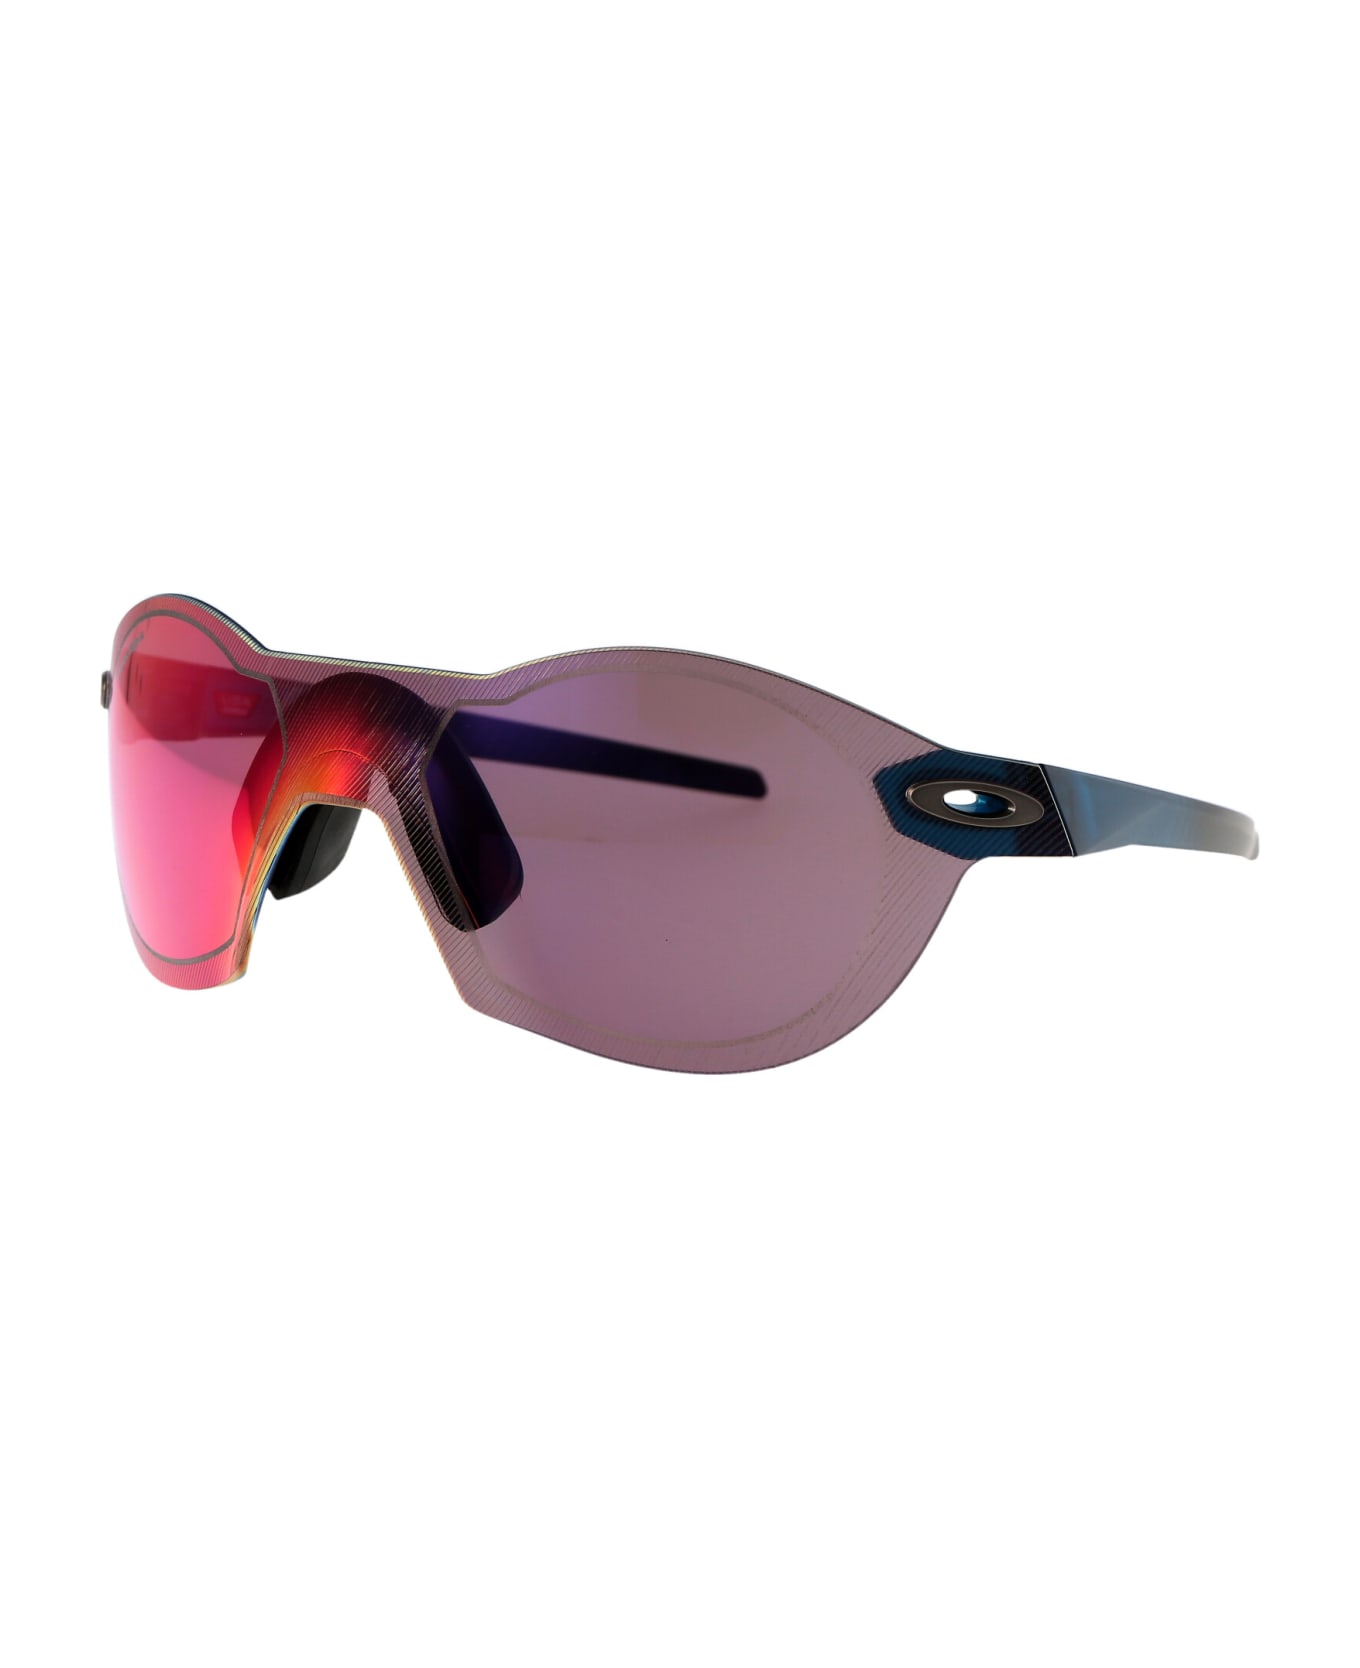 Oakley Re:subzero Sunglasses - 909815 Matte Balsam